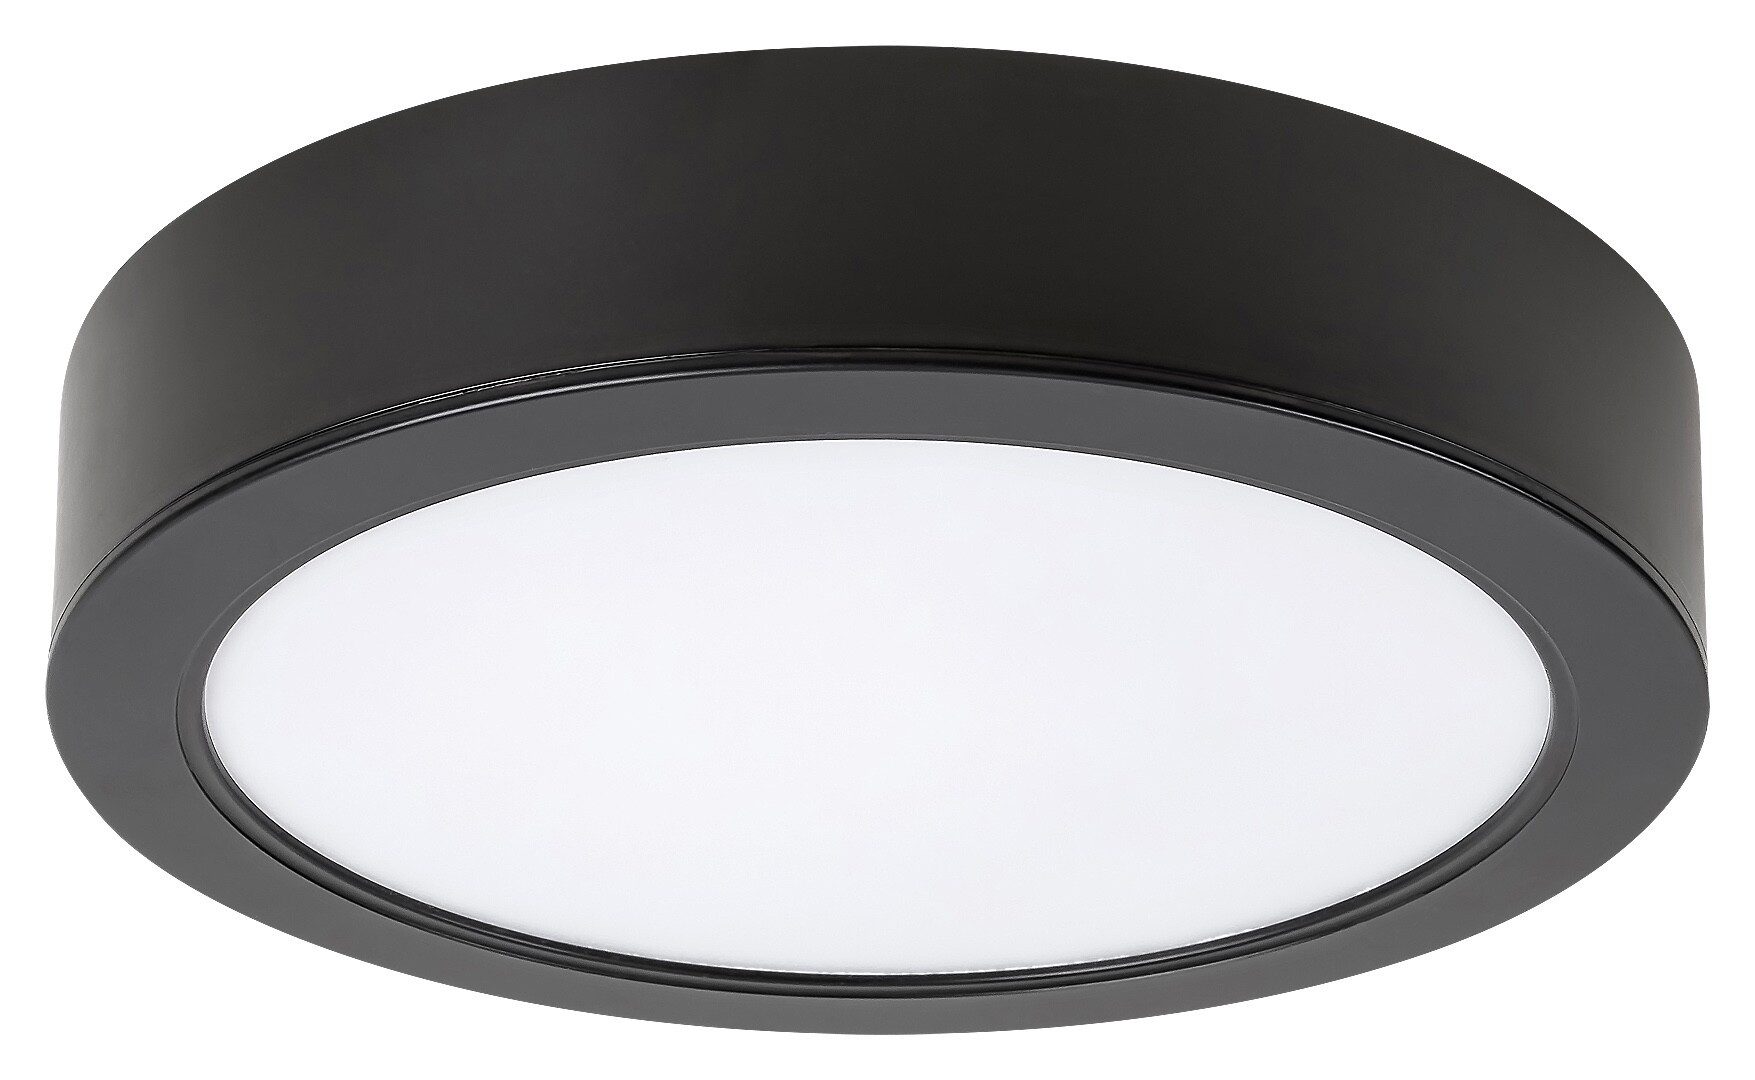 Rabalux LED Deckenspots Kunststoff, schwarz, rund, Einbau, 12W, neutralweiß, 1035lm, ø145mm, mit Leuchtmittel, neutralweiß